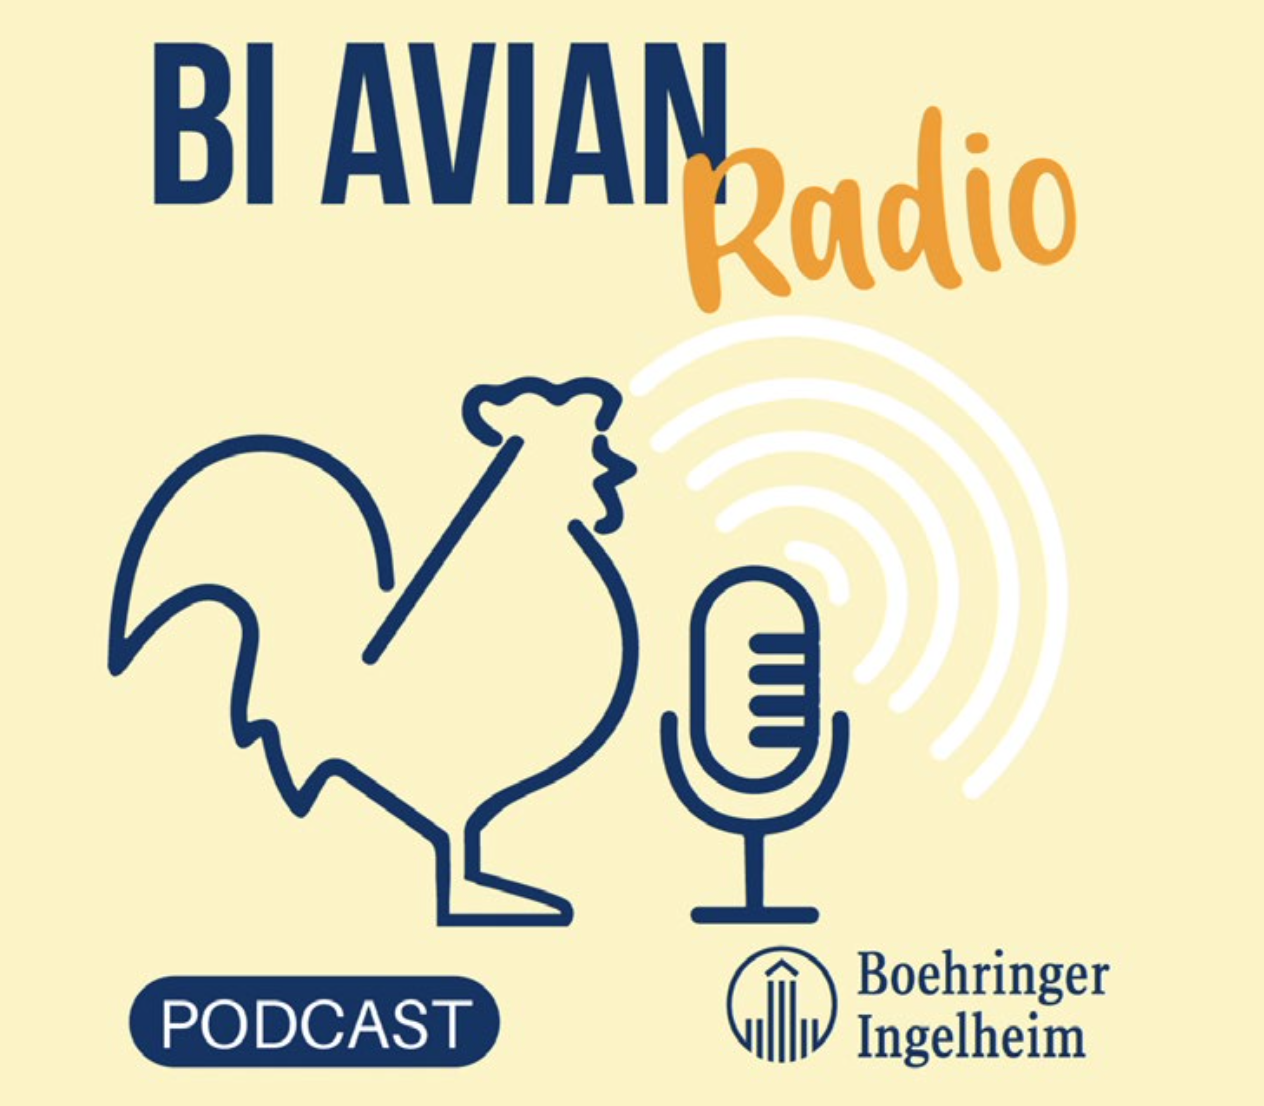 Boehringer Ingelheim Avian Radio, el podcast del sector avícola, cierra temporada con más de 27.000 escuchas